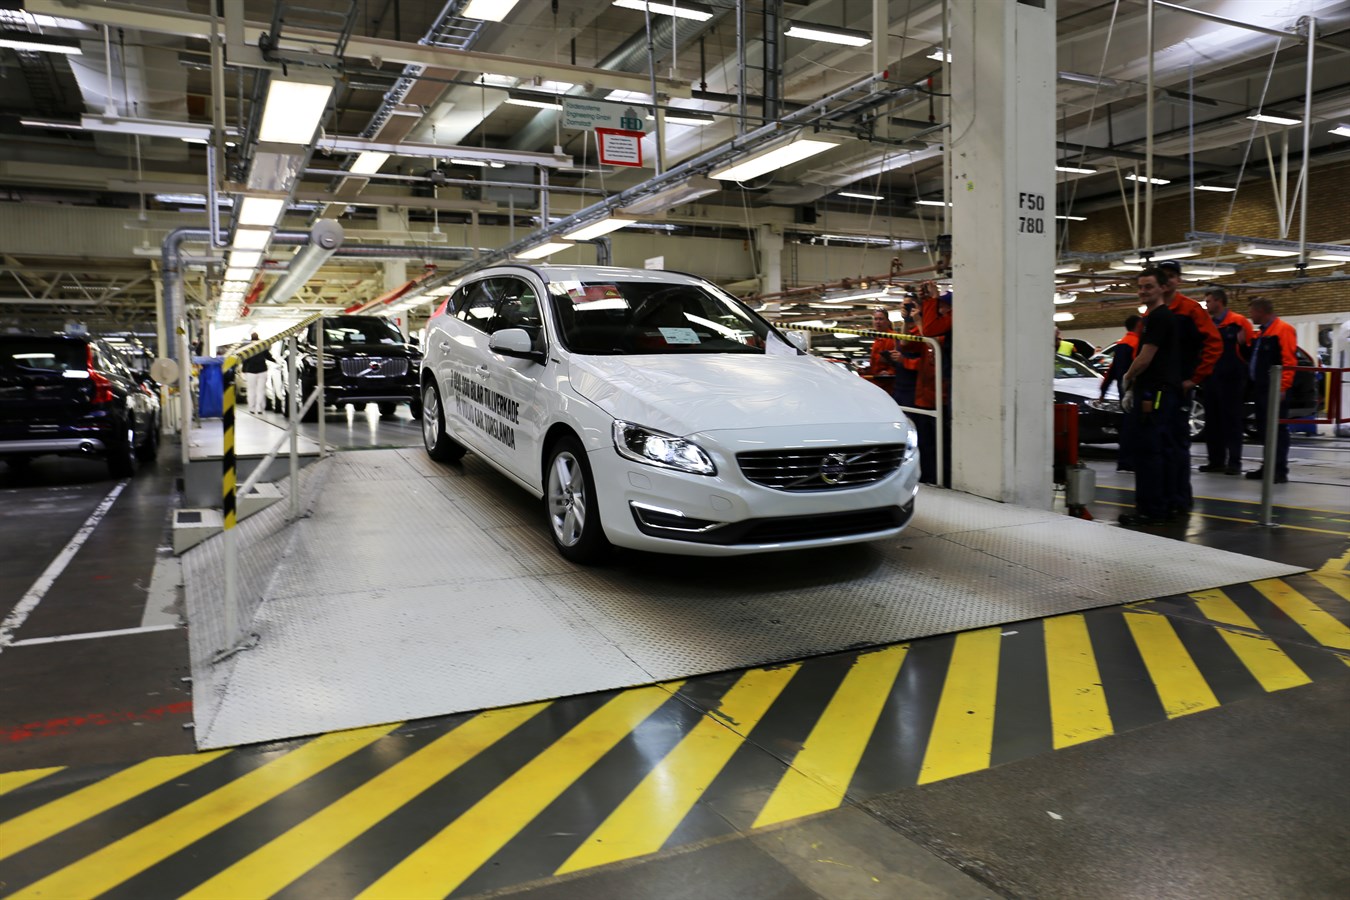 7 000 000:e Volvon rullar av produktionsbandet